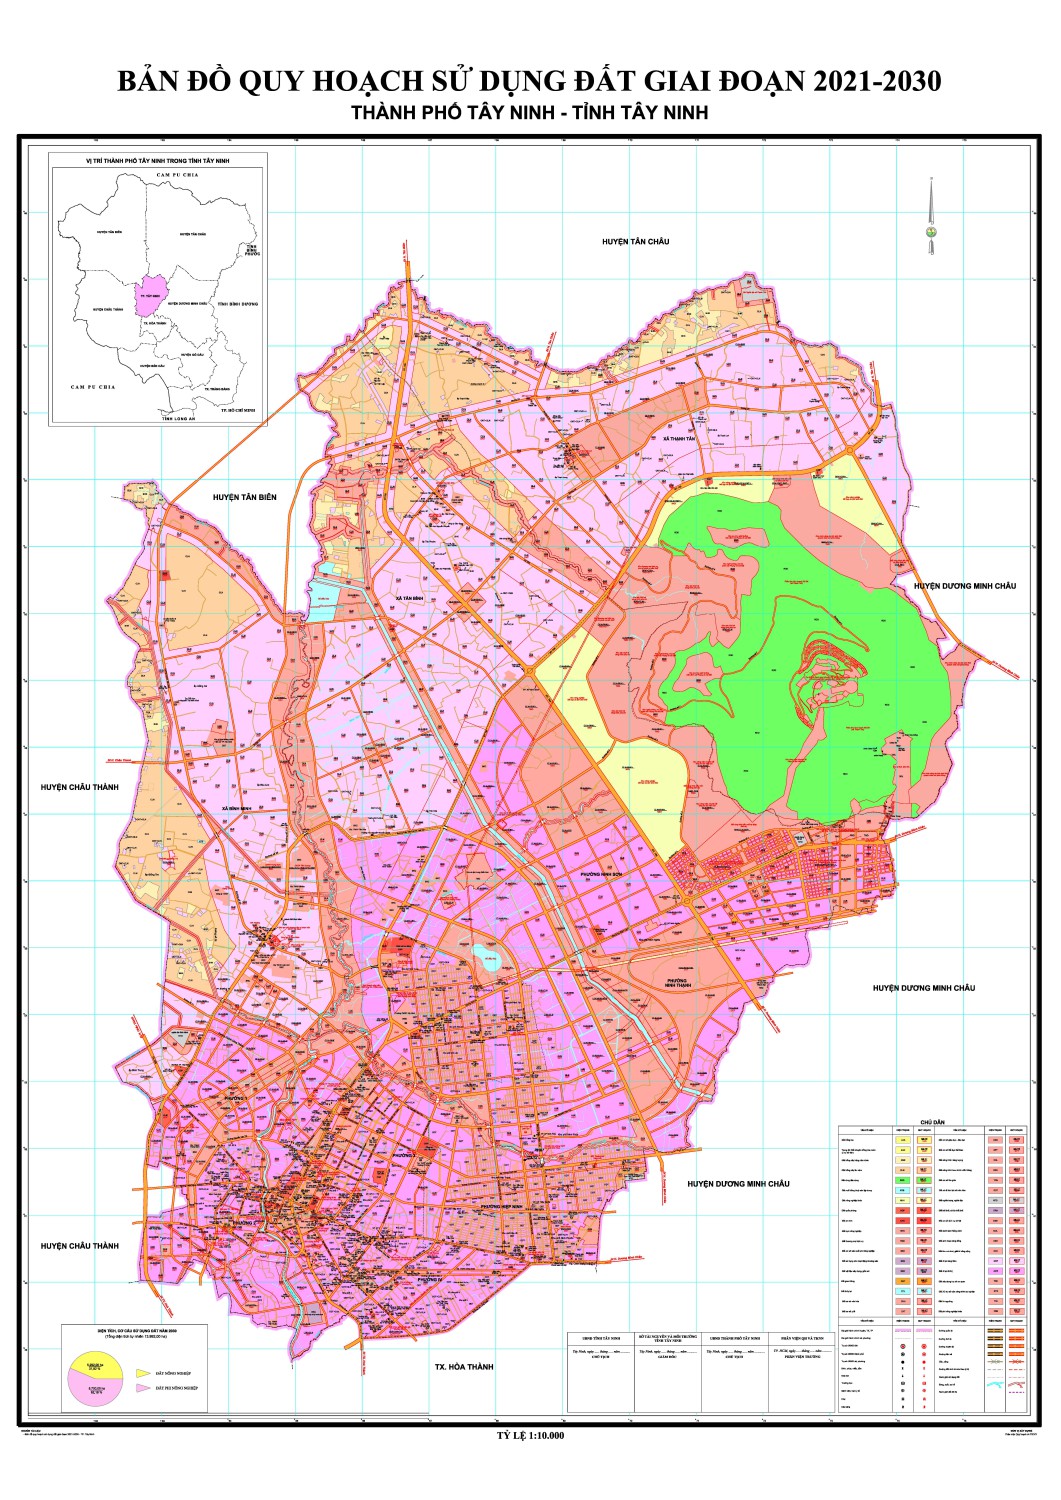 Bản đồ quy hoạch tỉnh Tây Ninh